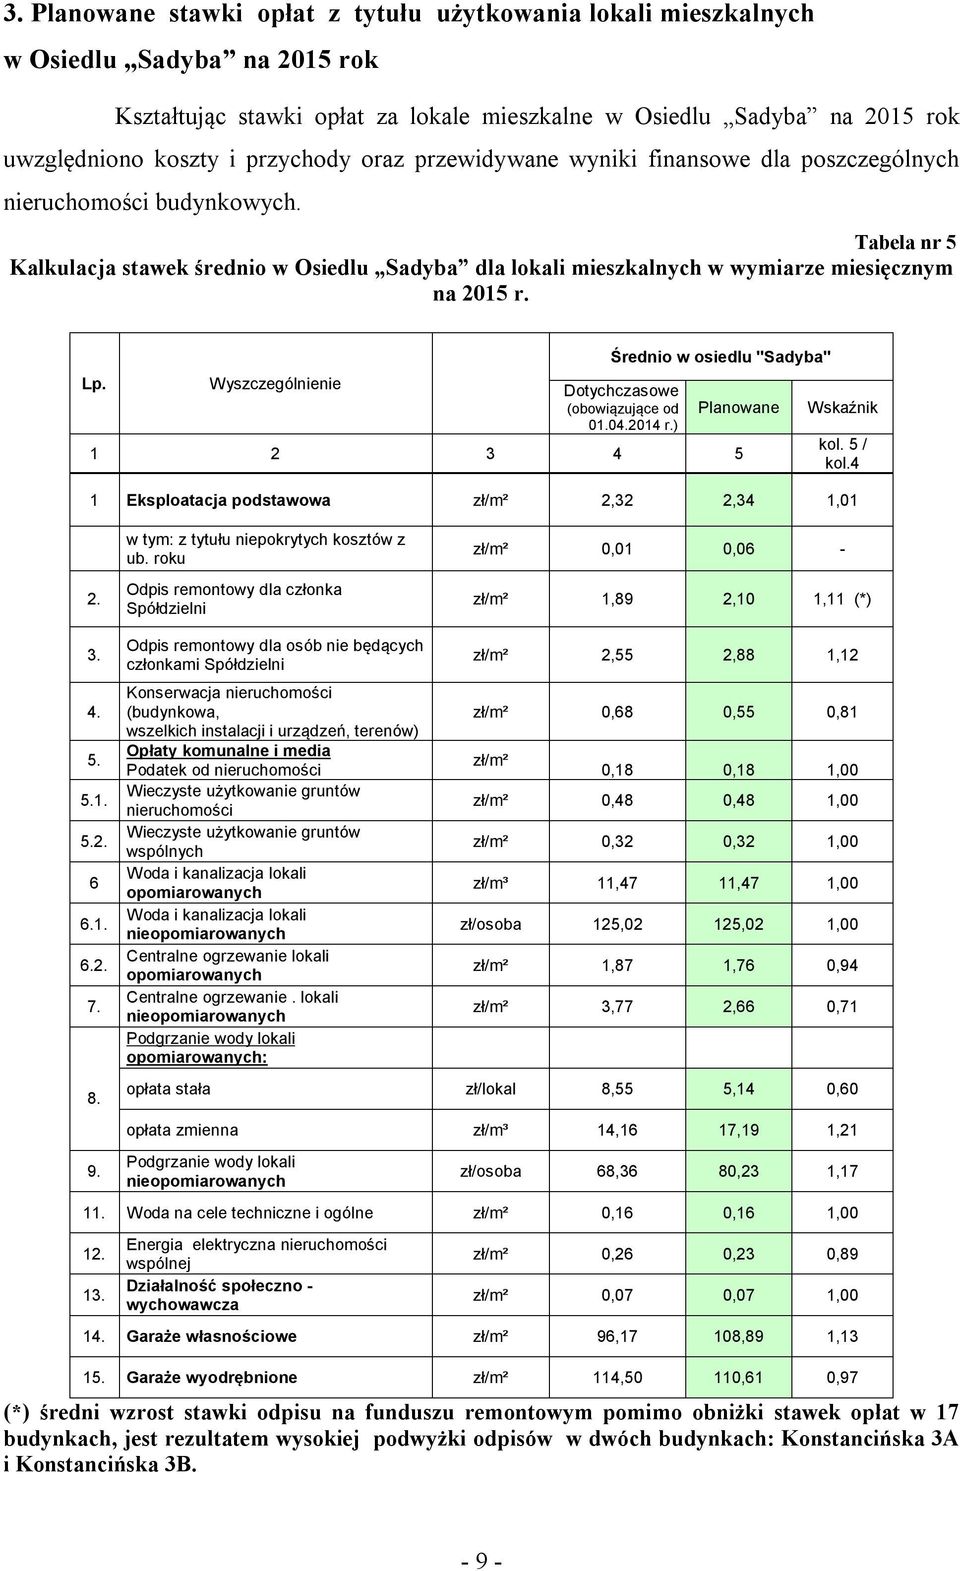 Tabela nr 5 Kalkulacja stawek średnio w Osiedlu Sadyba dla lokali mieszkalnych w wymiarze miesięcznym na 2015 r. Lp. Wyszczególnienie Średnio w osiedlu "Sadyba" Dotychczasowe (obowiązujące od 01.04.